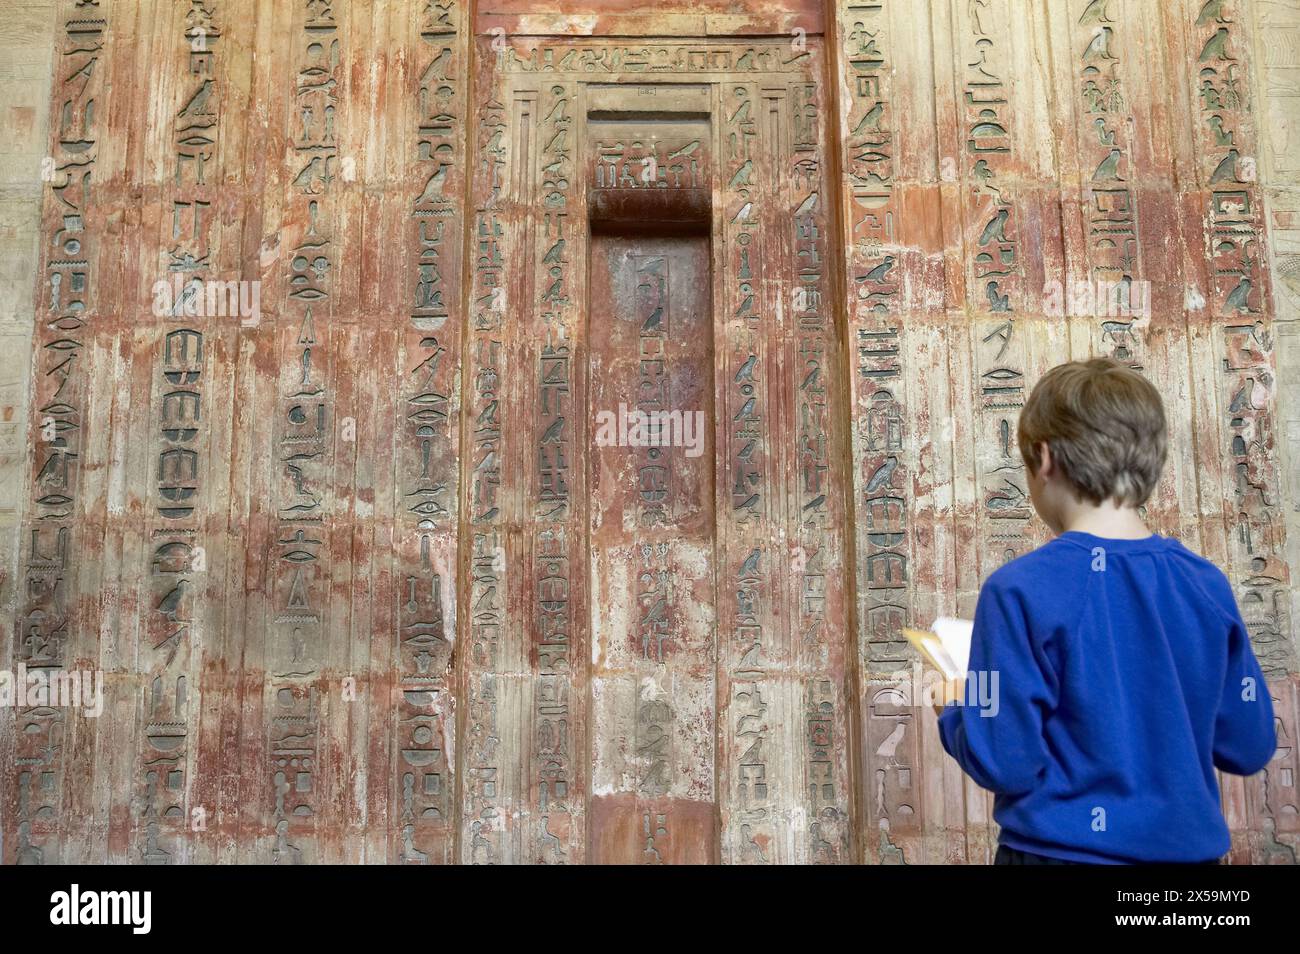 Kalkstein falsche Tür des Ptahshepses, ägyptische Skulptur, das British Museum, London. England. VEREINIGTES KÖNIGREICH. Stockfoto